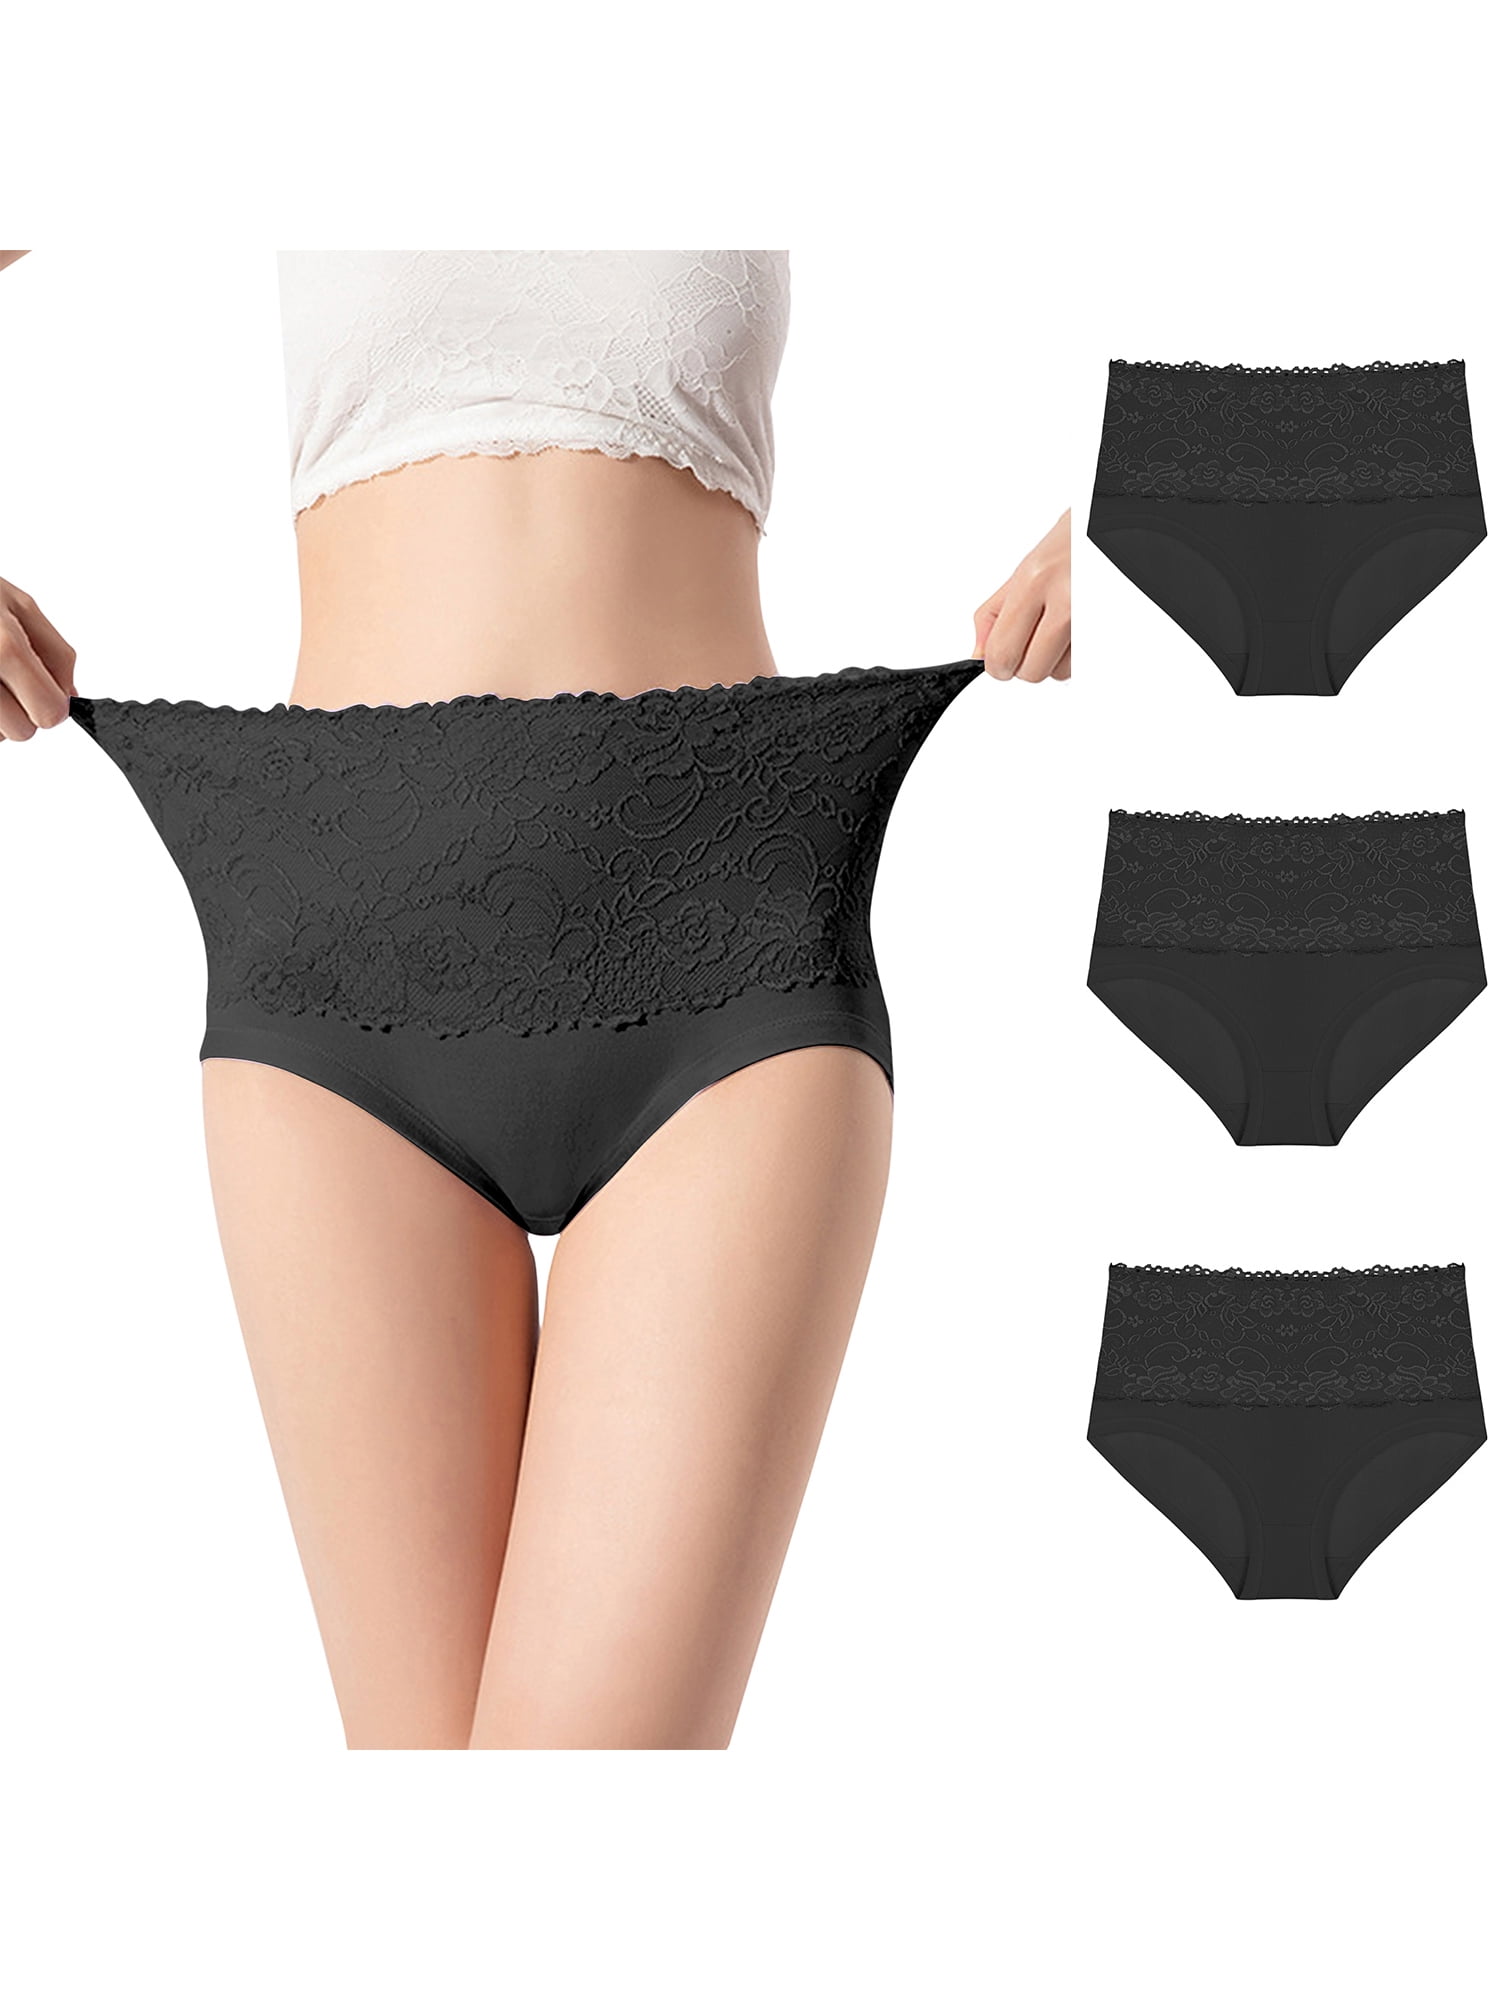 KHWAISH STORE Women's Underwear High-End HIPS Shaping Body Size Plus Size  Underwear Women's Cotton High Waist Ladies Briefs Shorts, Size(26 Till 46)